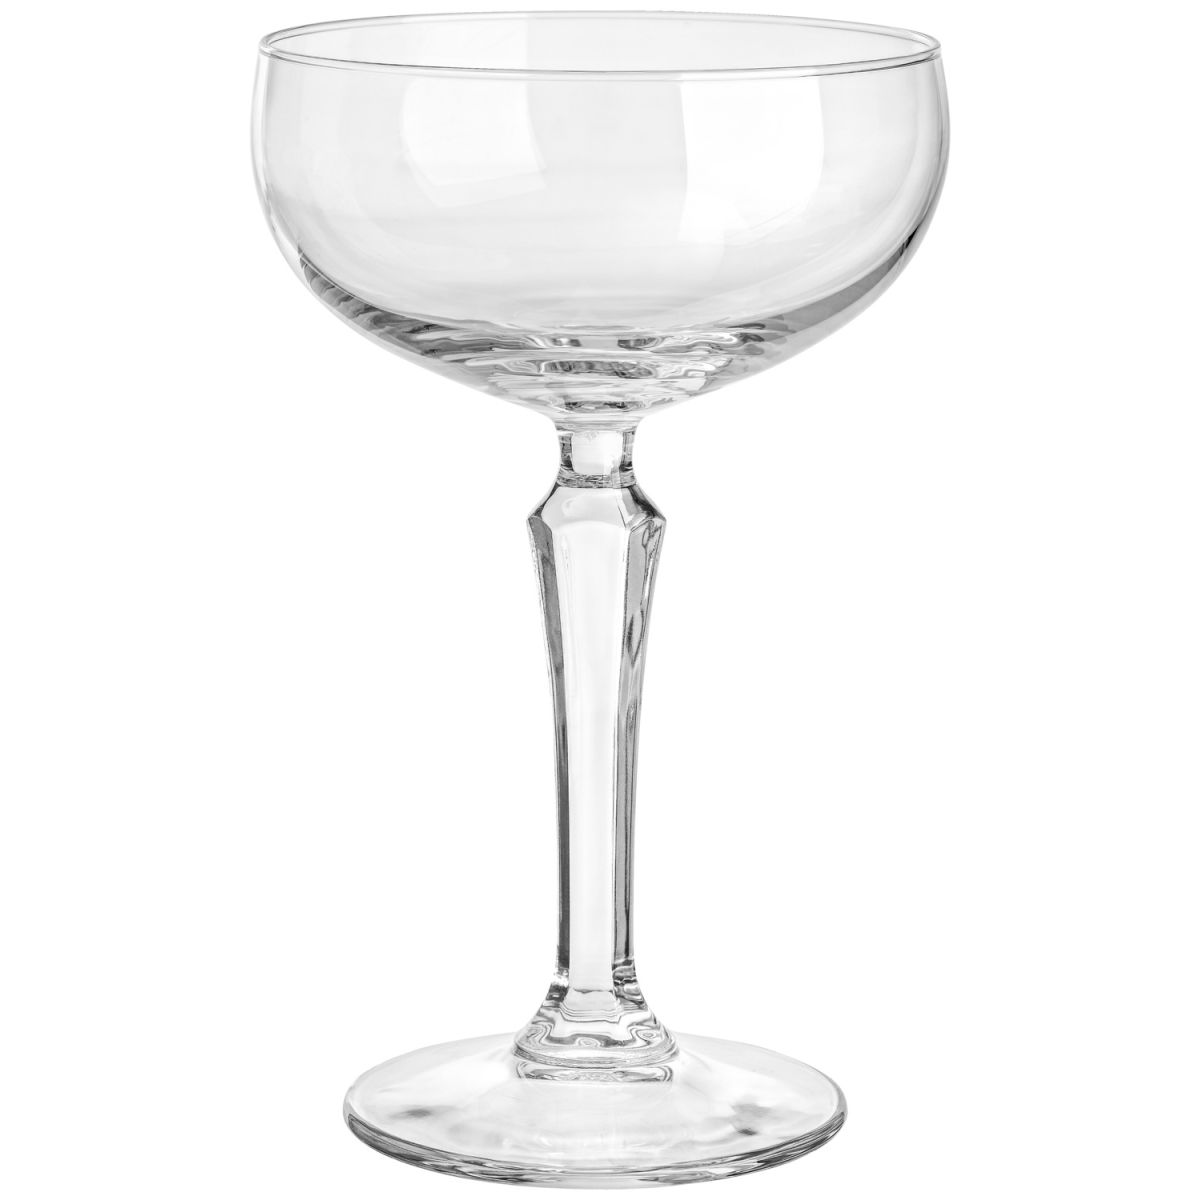 Vega Champagneglas Urbane; 210ml, 9.1x15.5 cm (ØxH); transparant; 12 stuk / verpakking